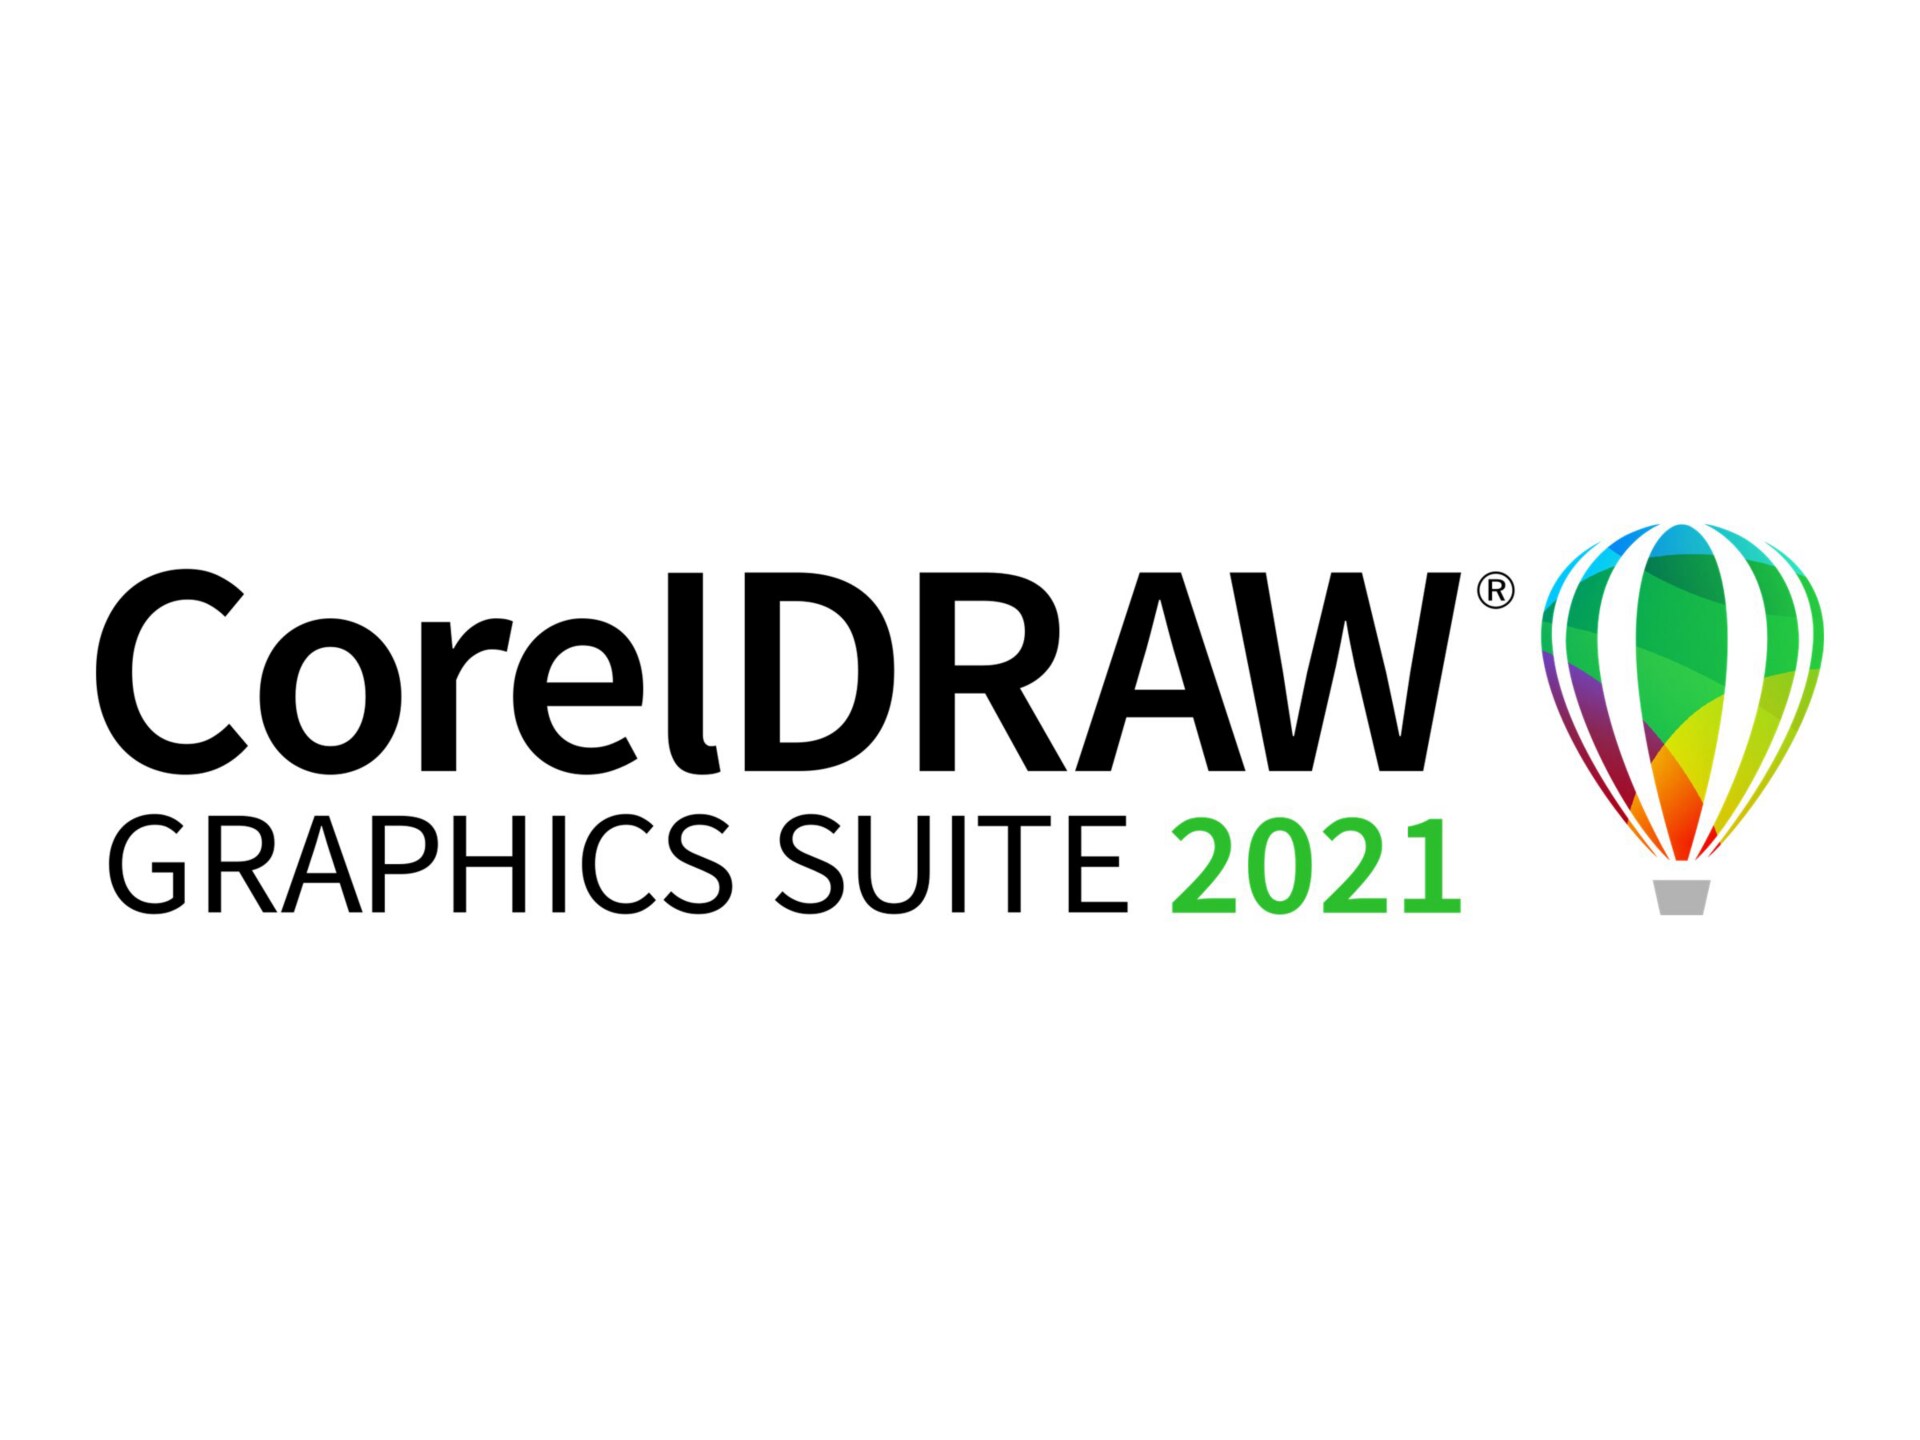 CorelDRAW Graphics Suite 2021 - Enterprise license + 1 year CorelSure Maintenance - 1 seat